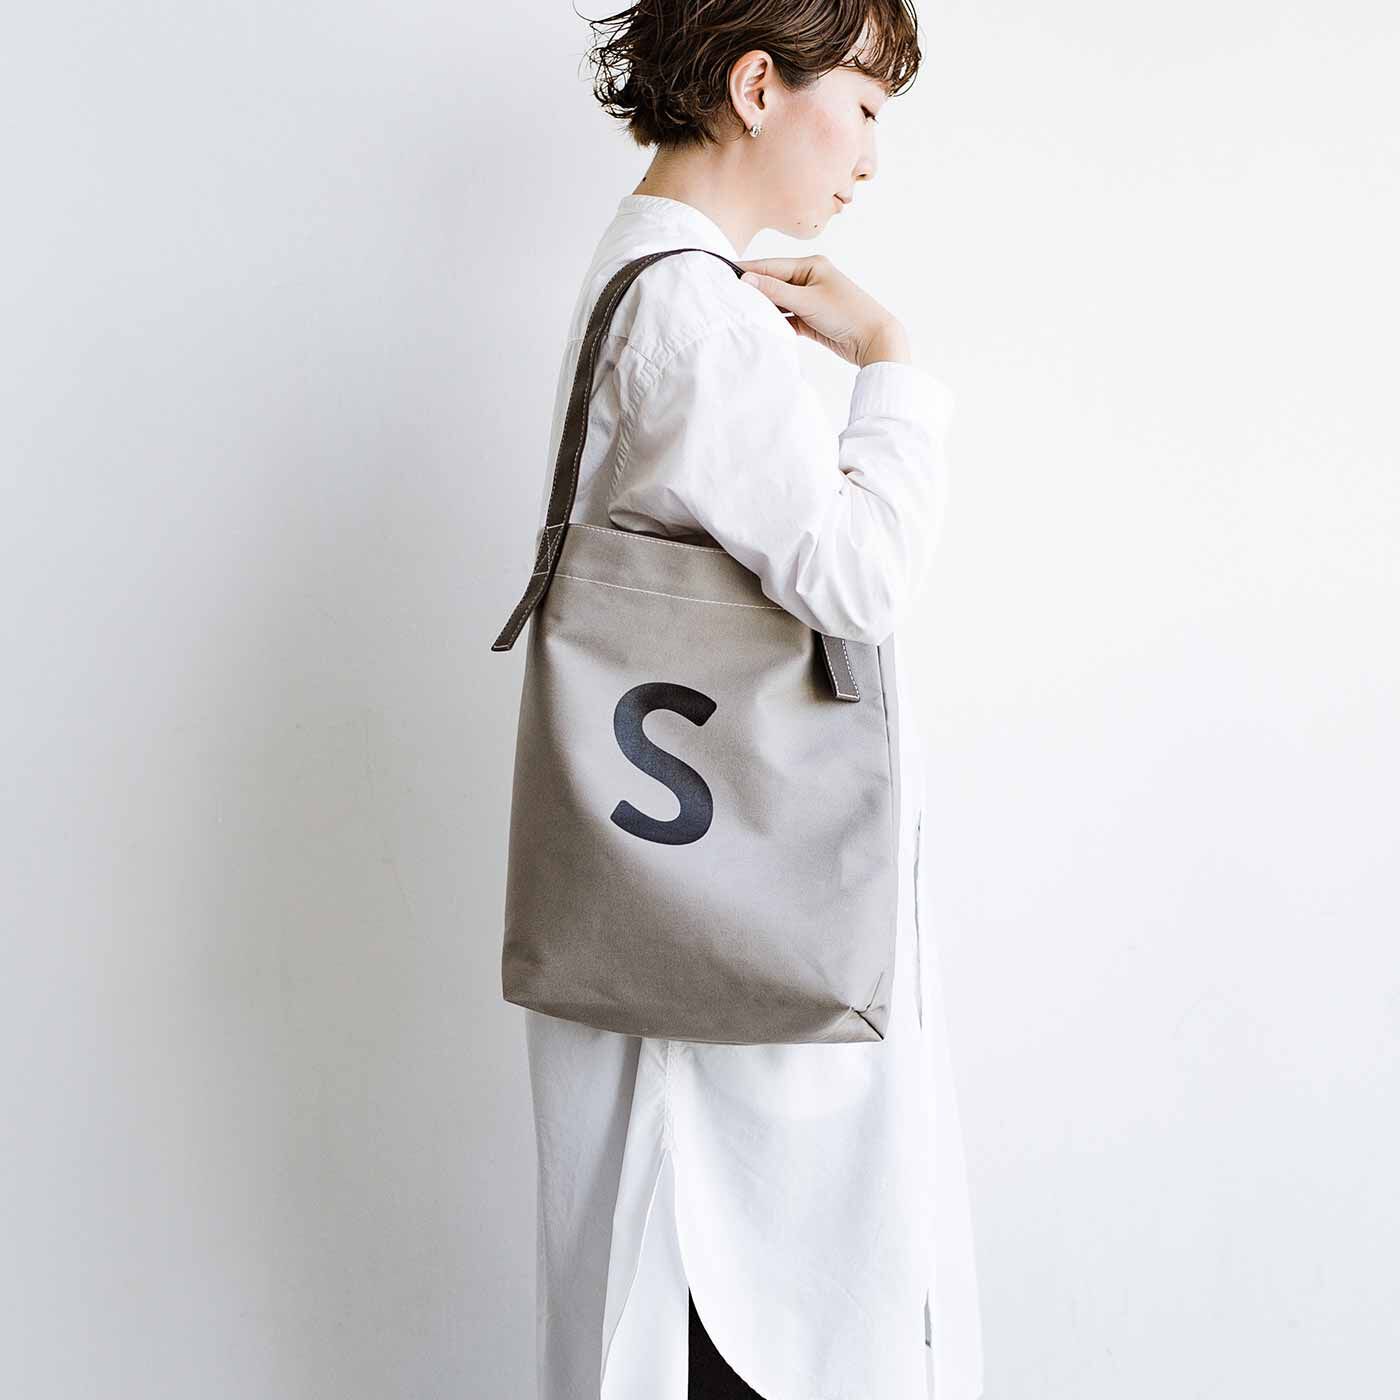 SeeMONO|お散歩にぴったりサイズ 倉敷帆布のワンループトートバッグ|グレートーンのシンプルなデザイン。秋冬の装いにもなじみます。